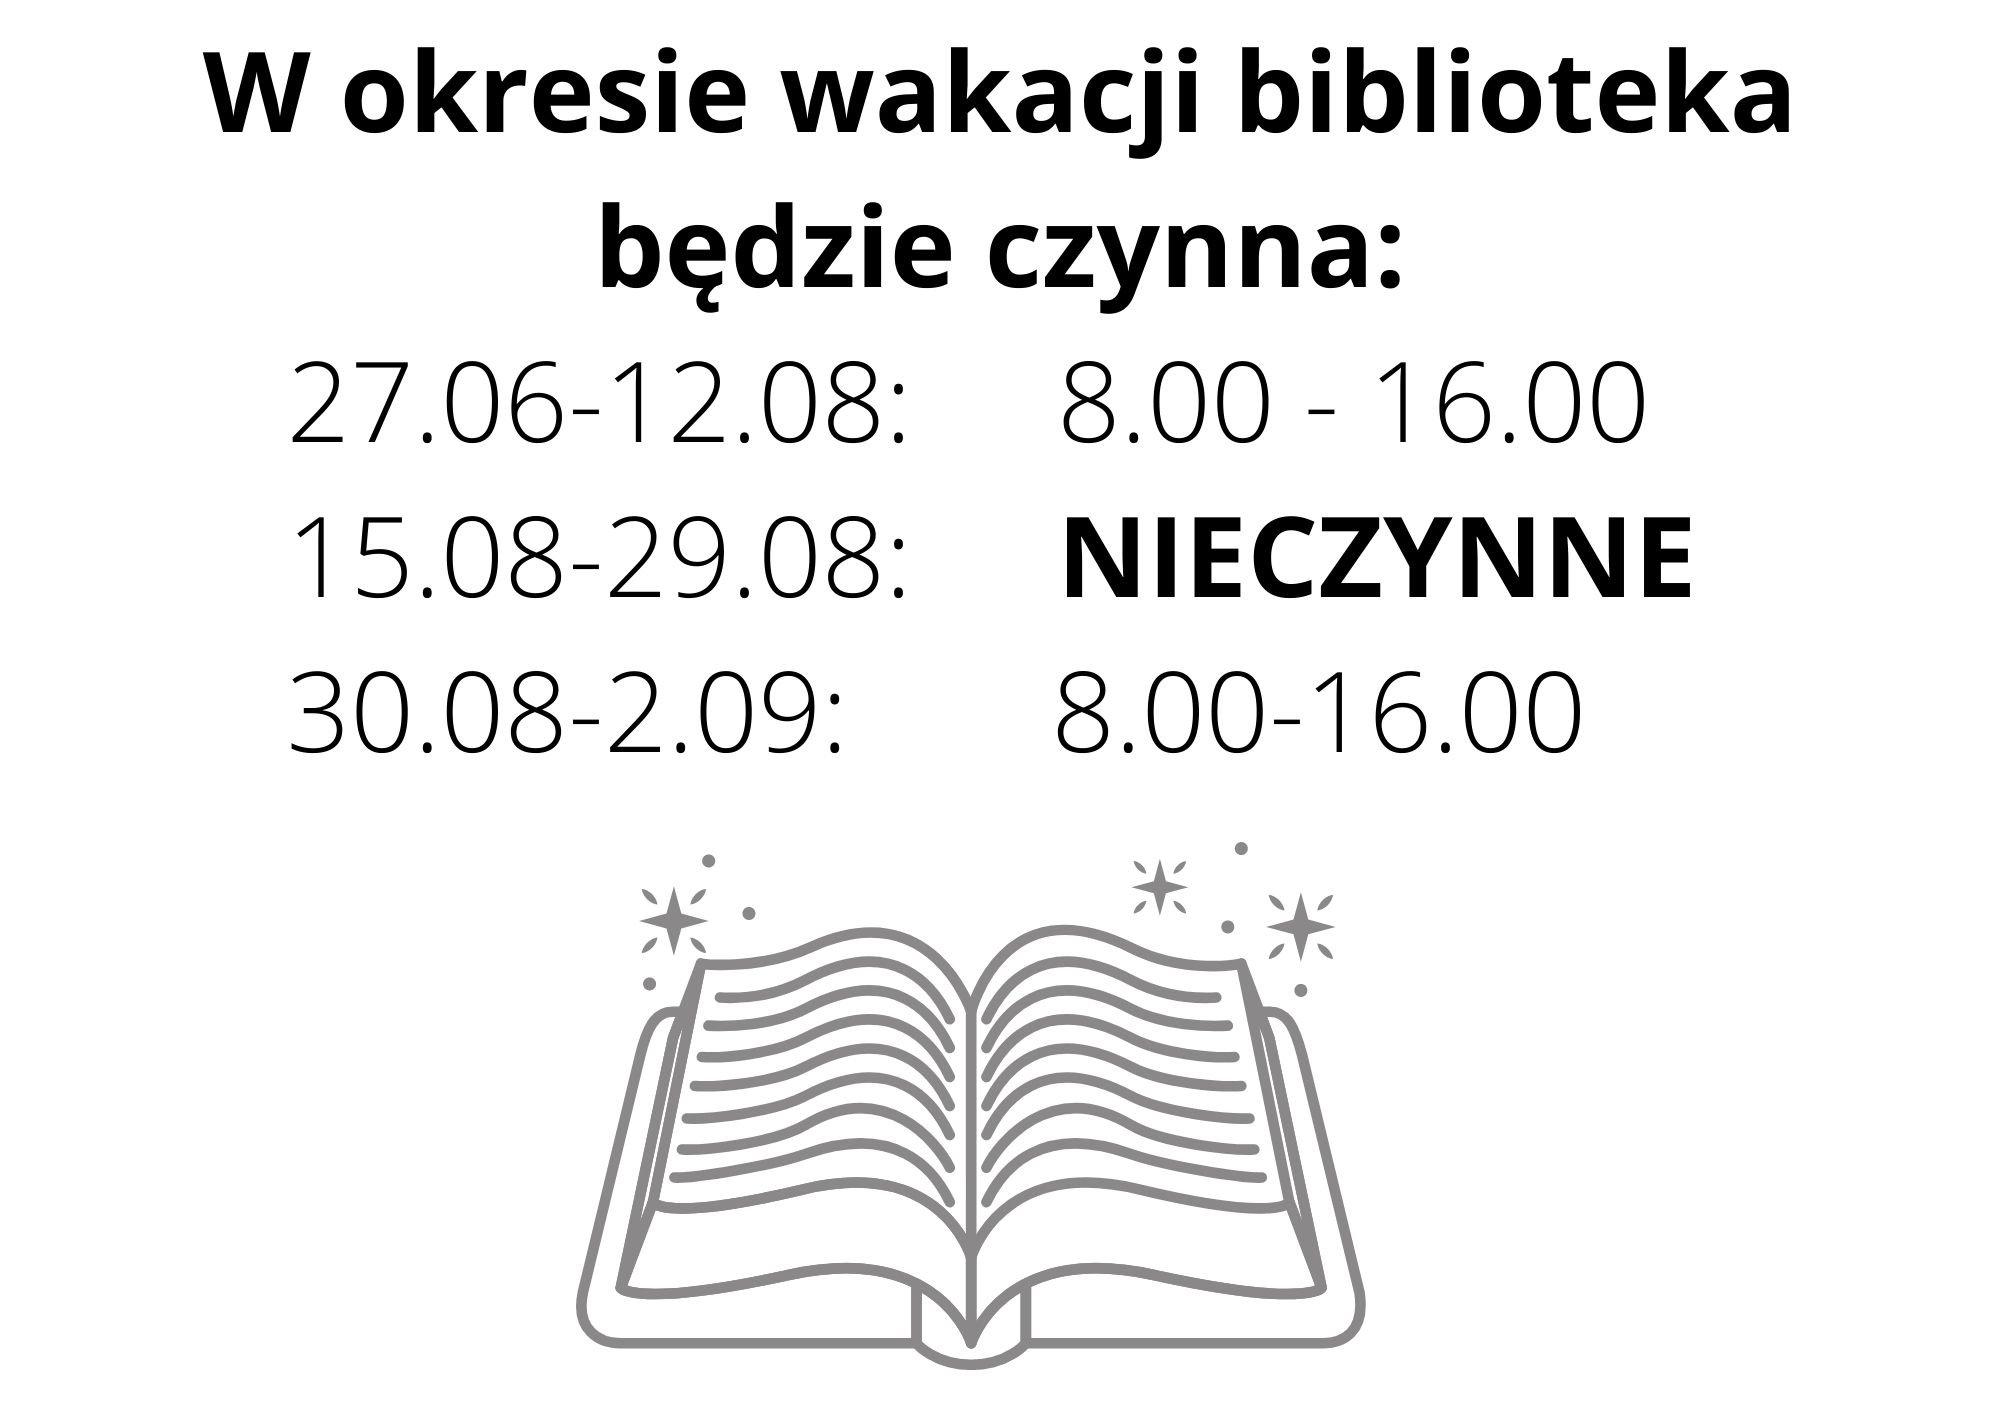 W okresie wakacji biblioteka będzie czynna: 27.06 - 12.08 godz. 08 :00 - 16:00, 15.08 - 29.08 nieczynne, 30.08 - 2.09. godz. 8:00 - 16:00